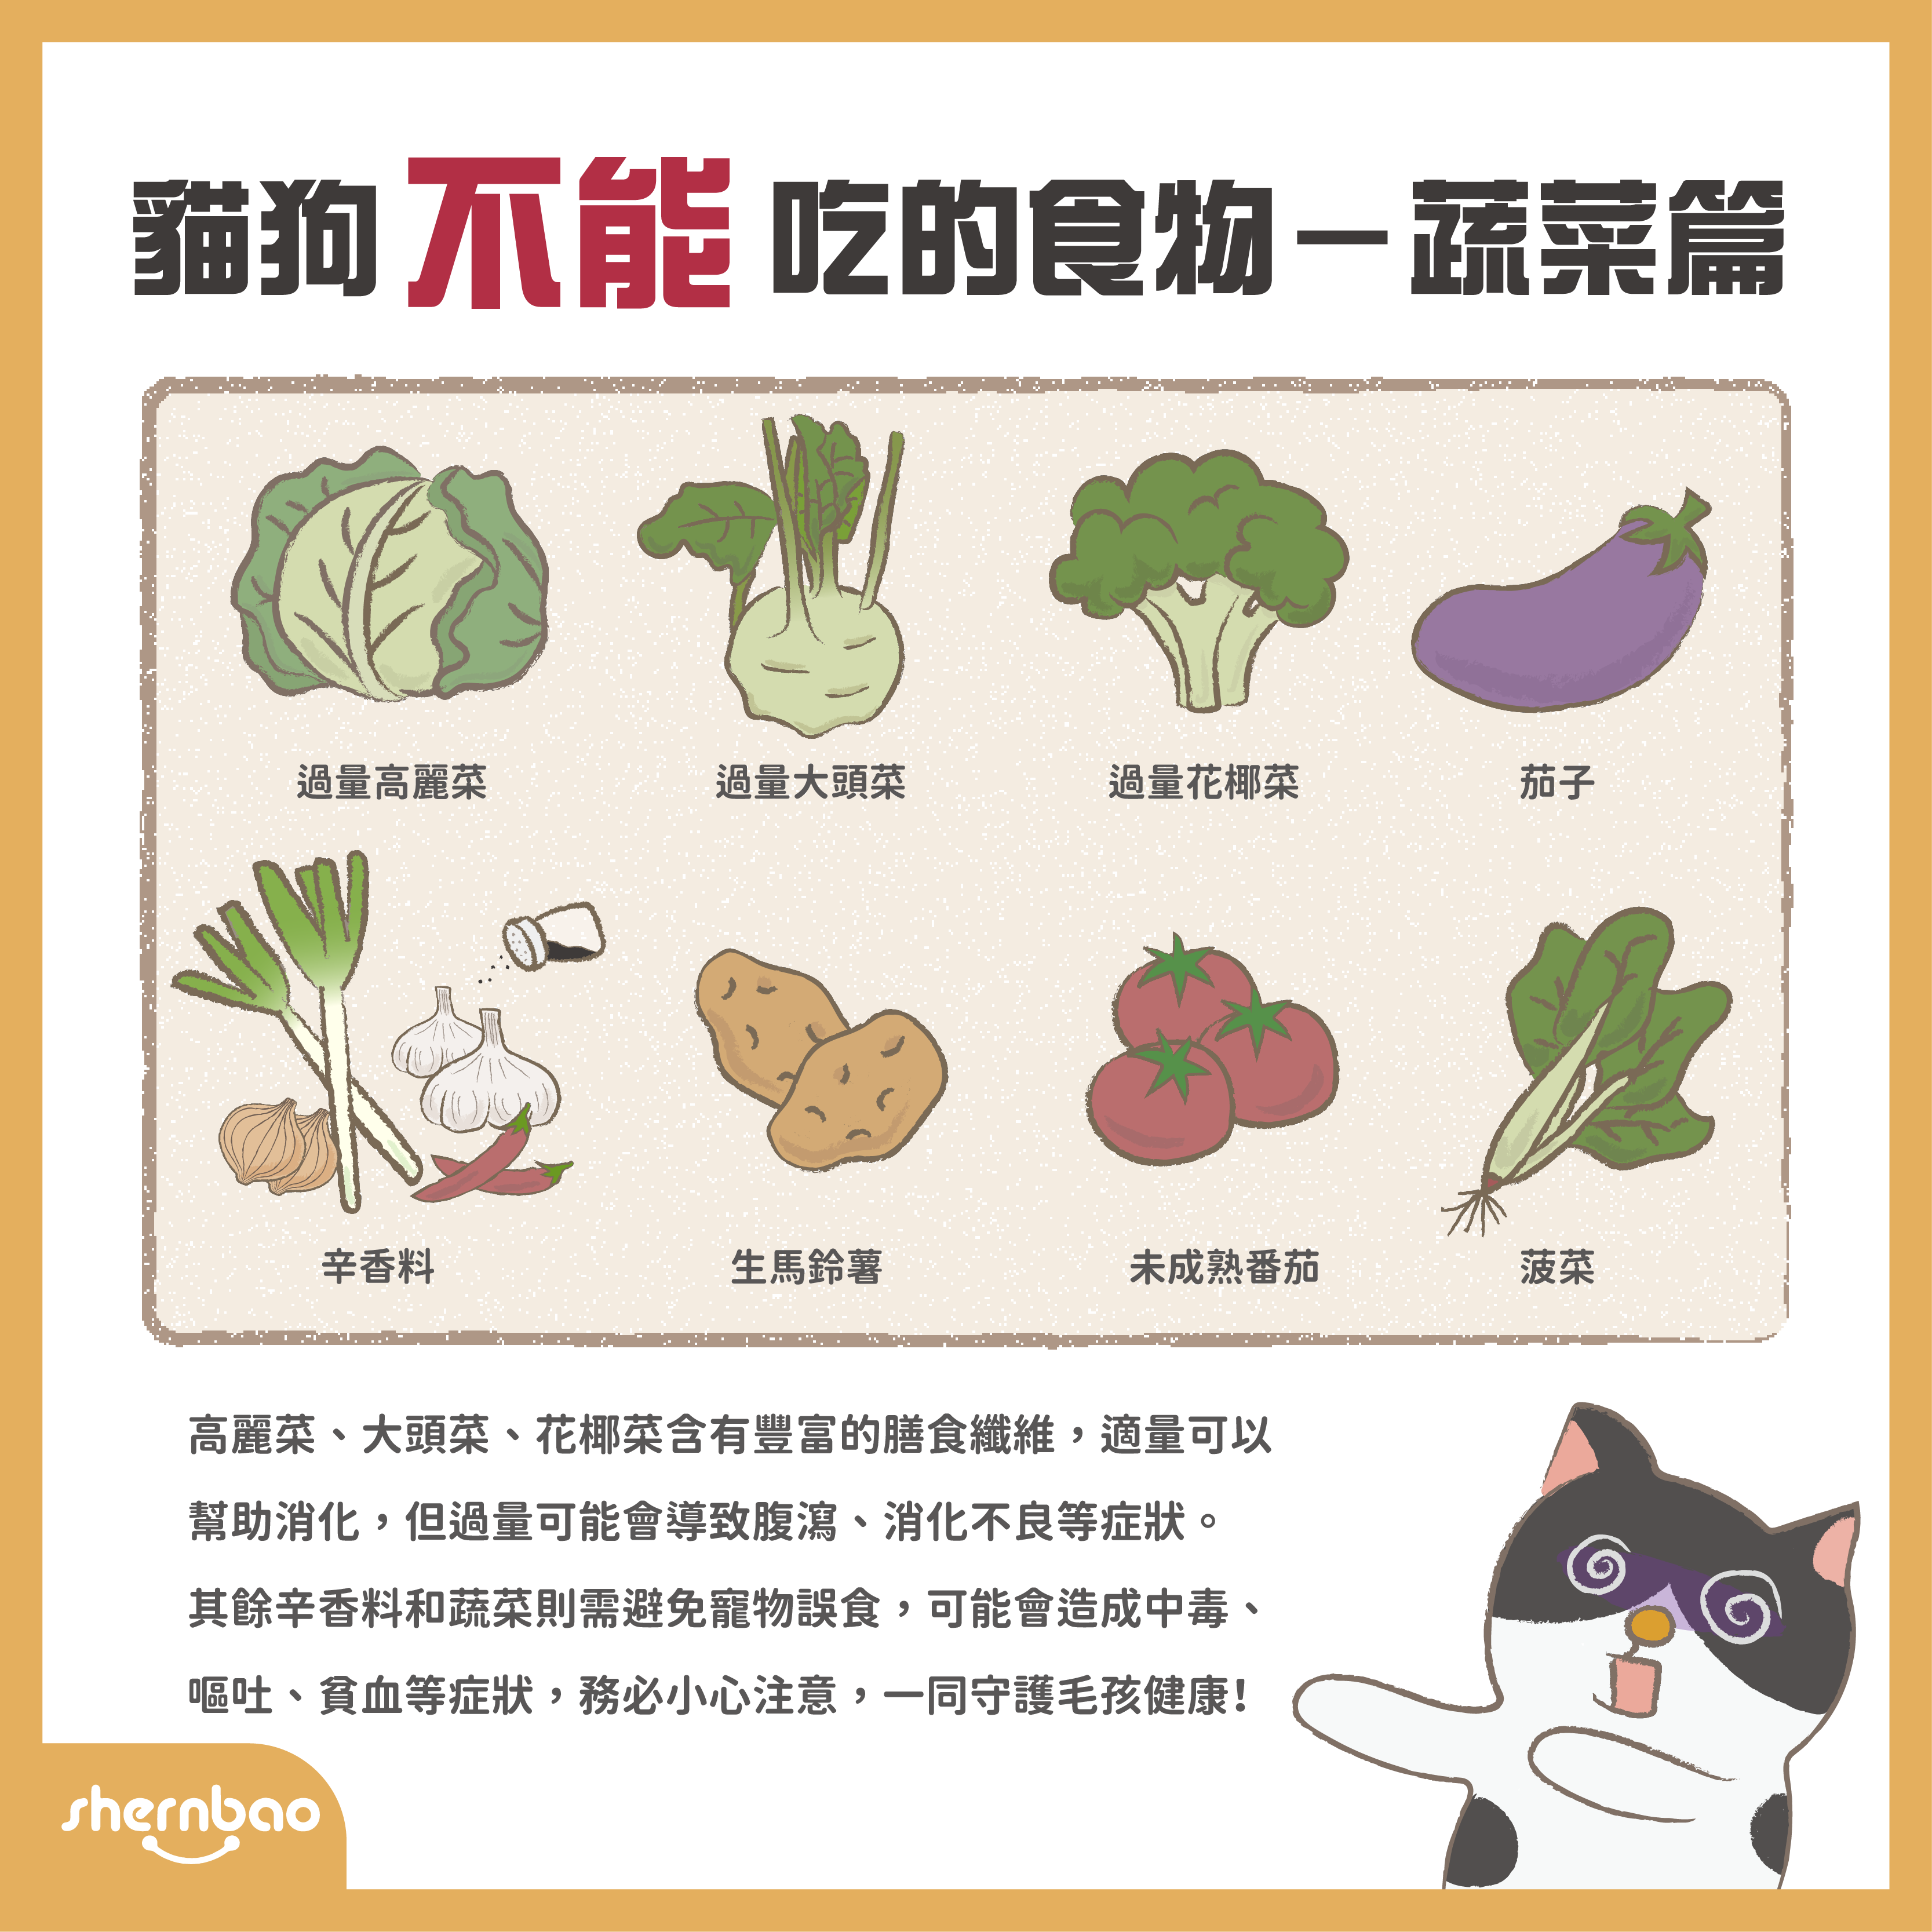 貓狗不能吃的食物 — 蔬菜篇